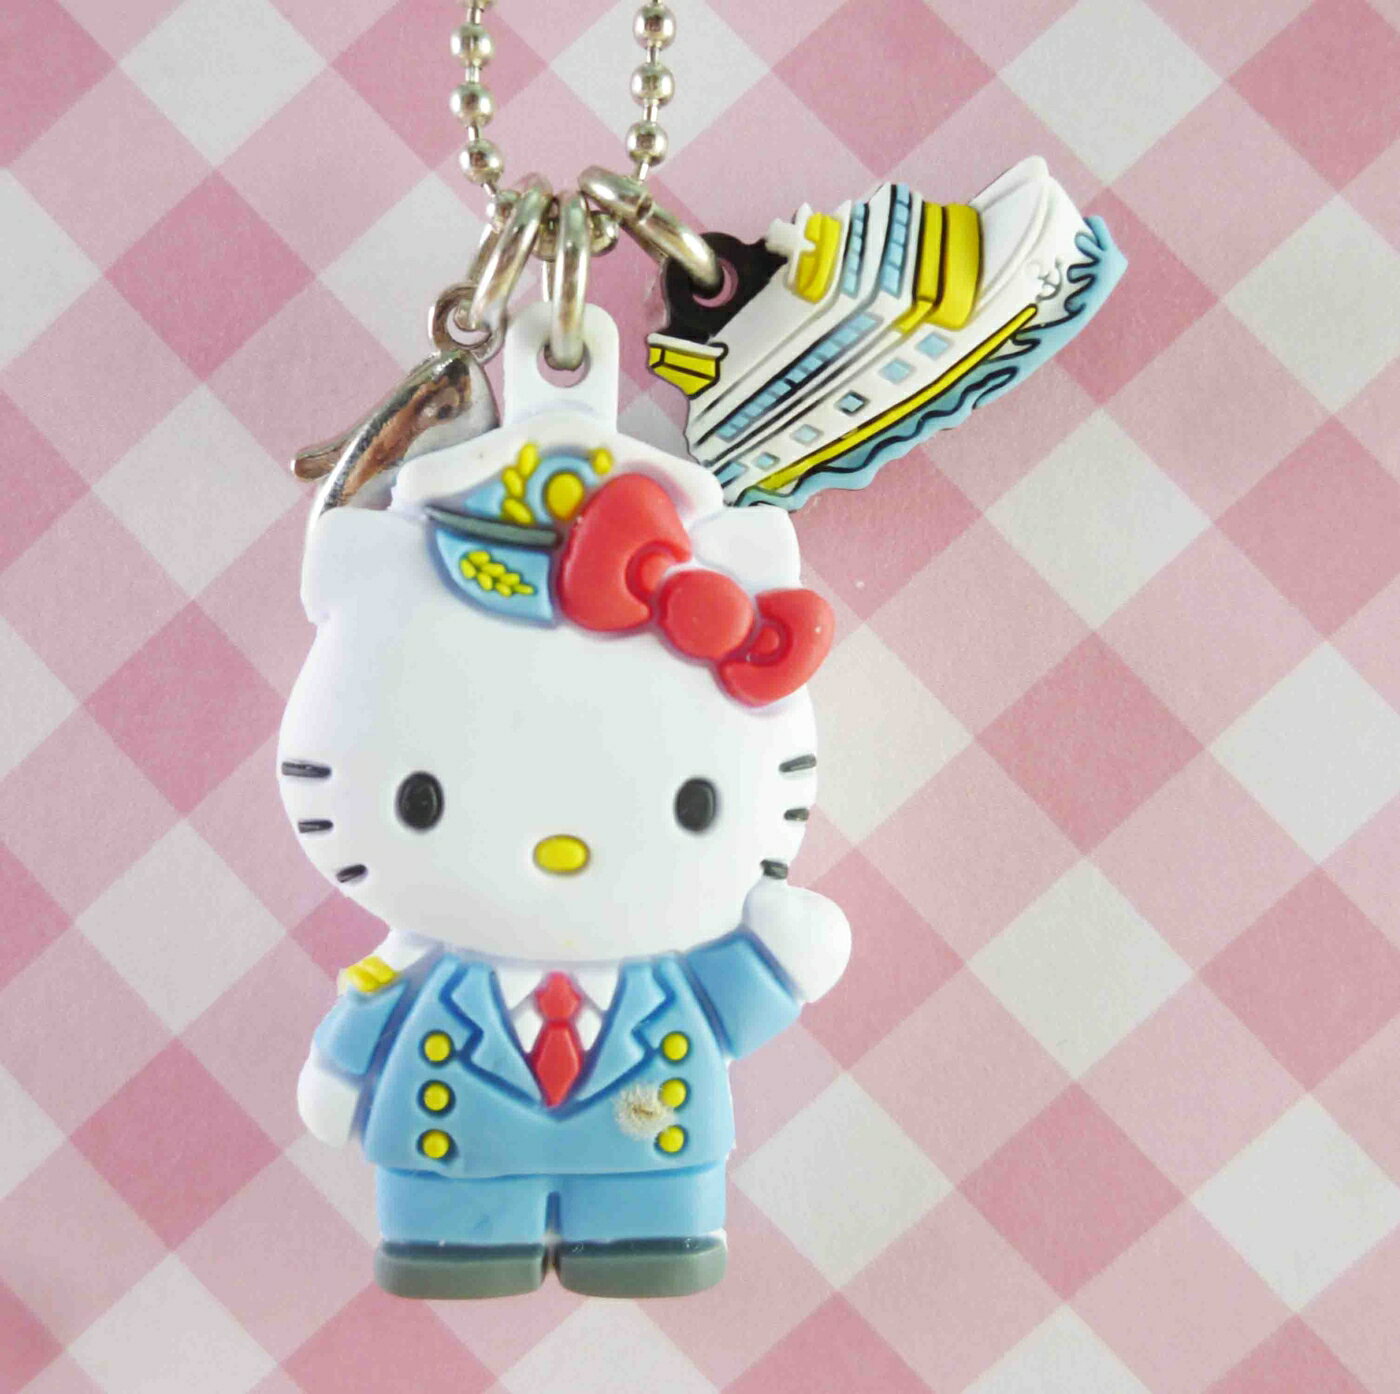 【震撼精品百貨】Hello Kitty 凱蒂貓 KITTY鎖圈-船車 震撼日式精品百貨